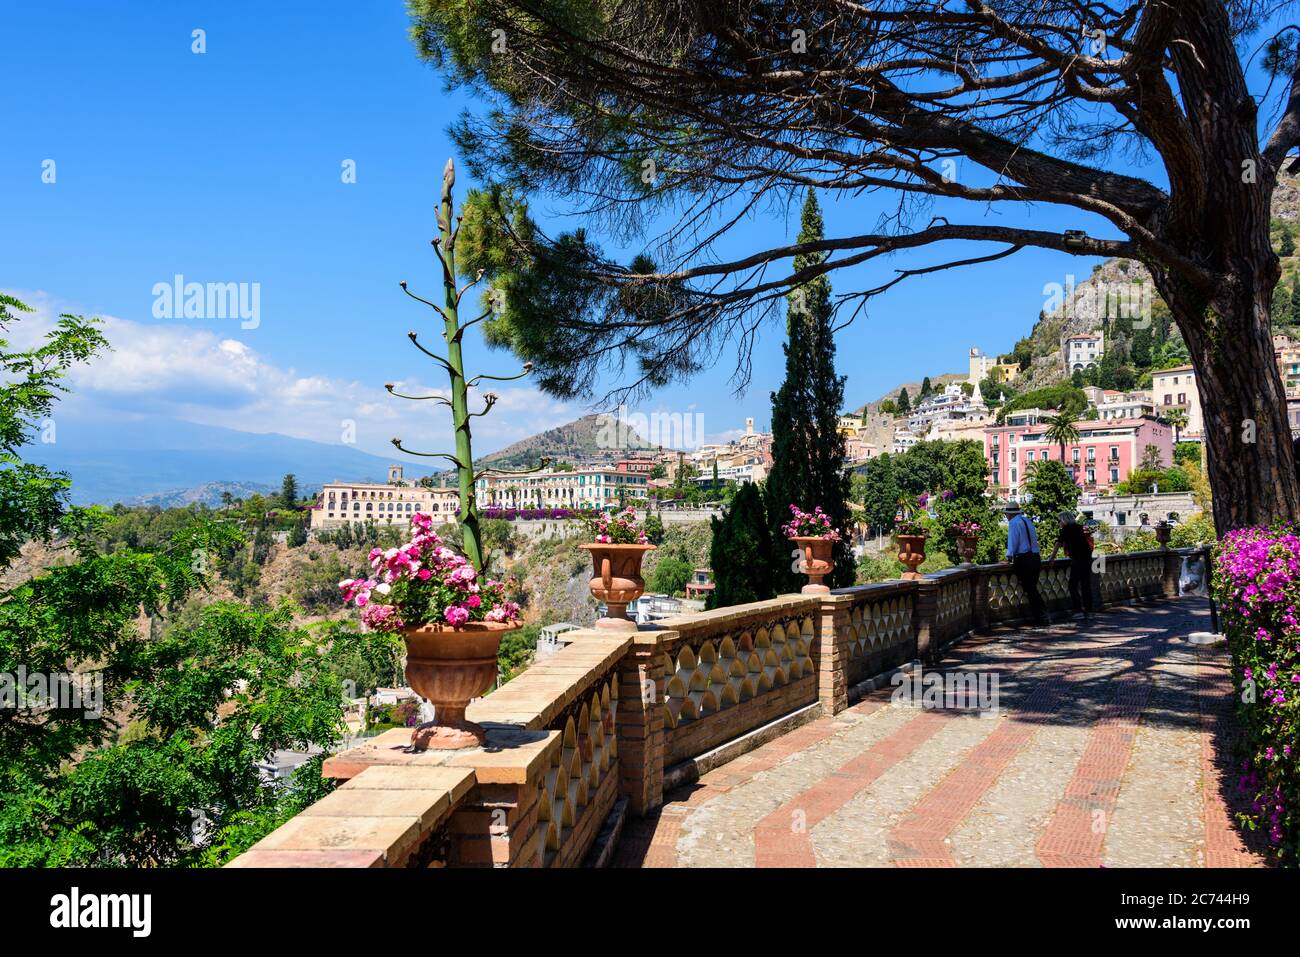 Der Giardino Pubblico in Taormina Sizilien ist tagsüber ein wunderbarer Rückzugsort dem Trubel der Tagestouristen zu entkommen und in Ruhe zu entspann Stock Photo